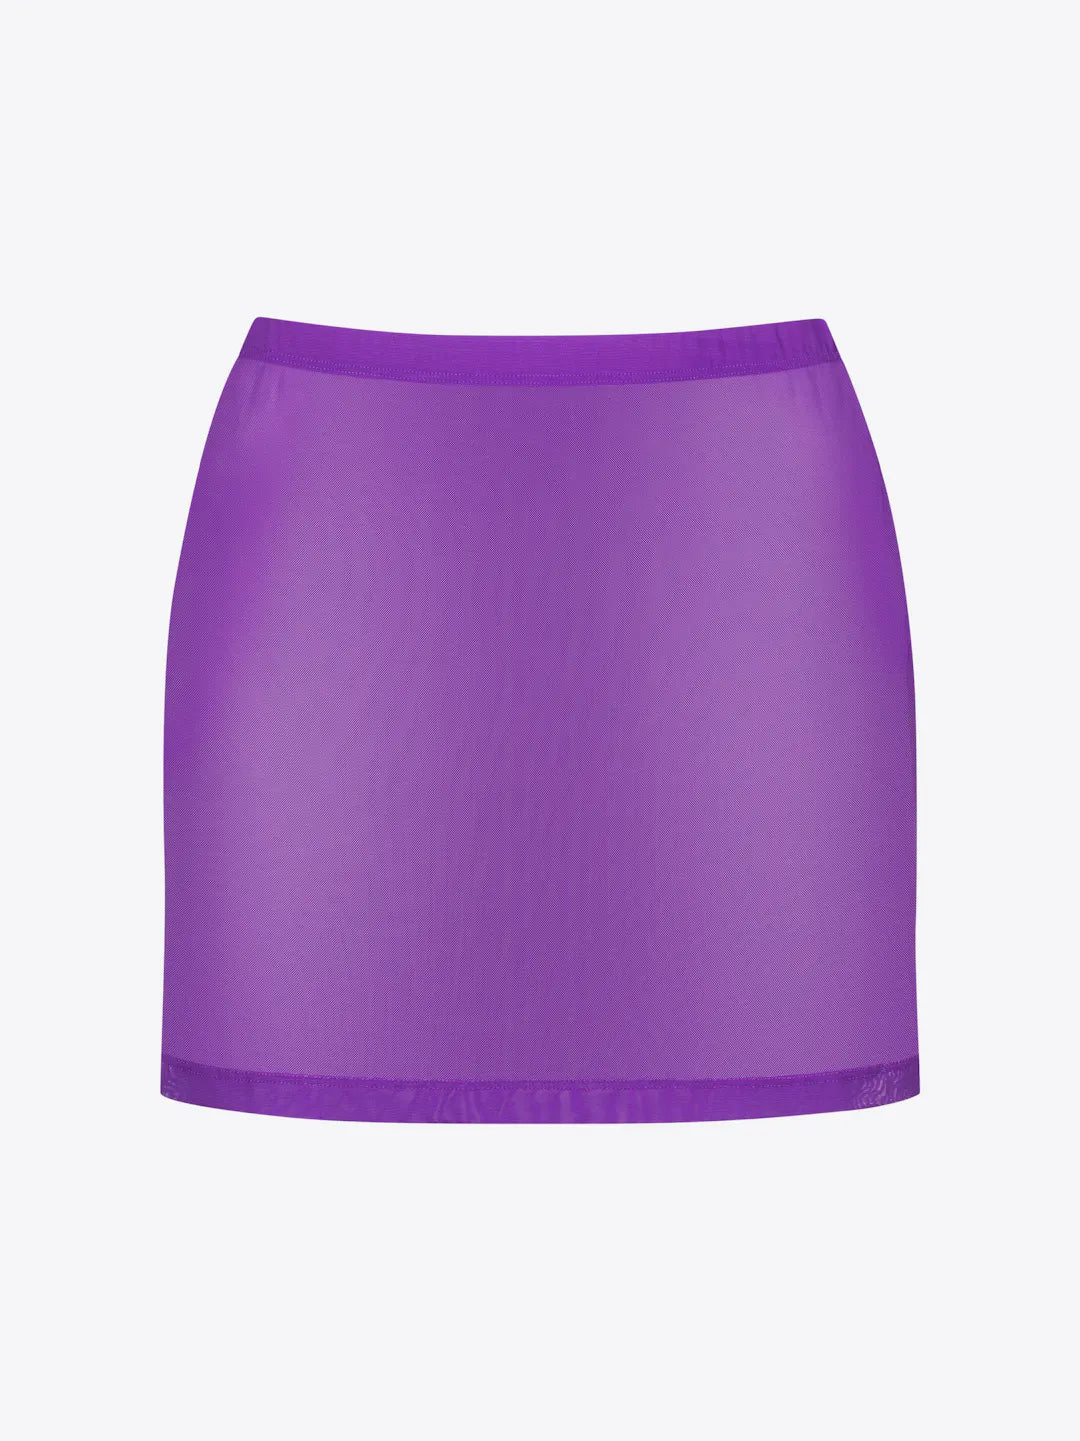 
                  
                    Sunny Skirt
                  
                